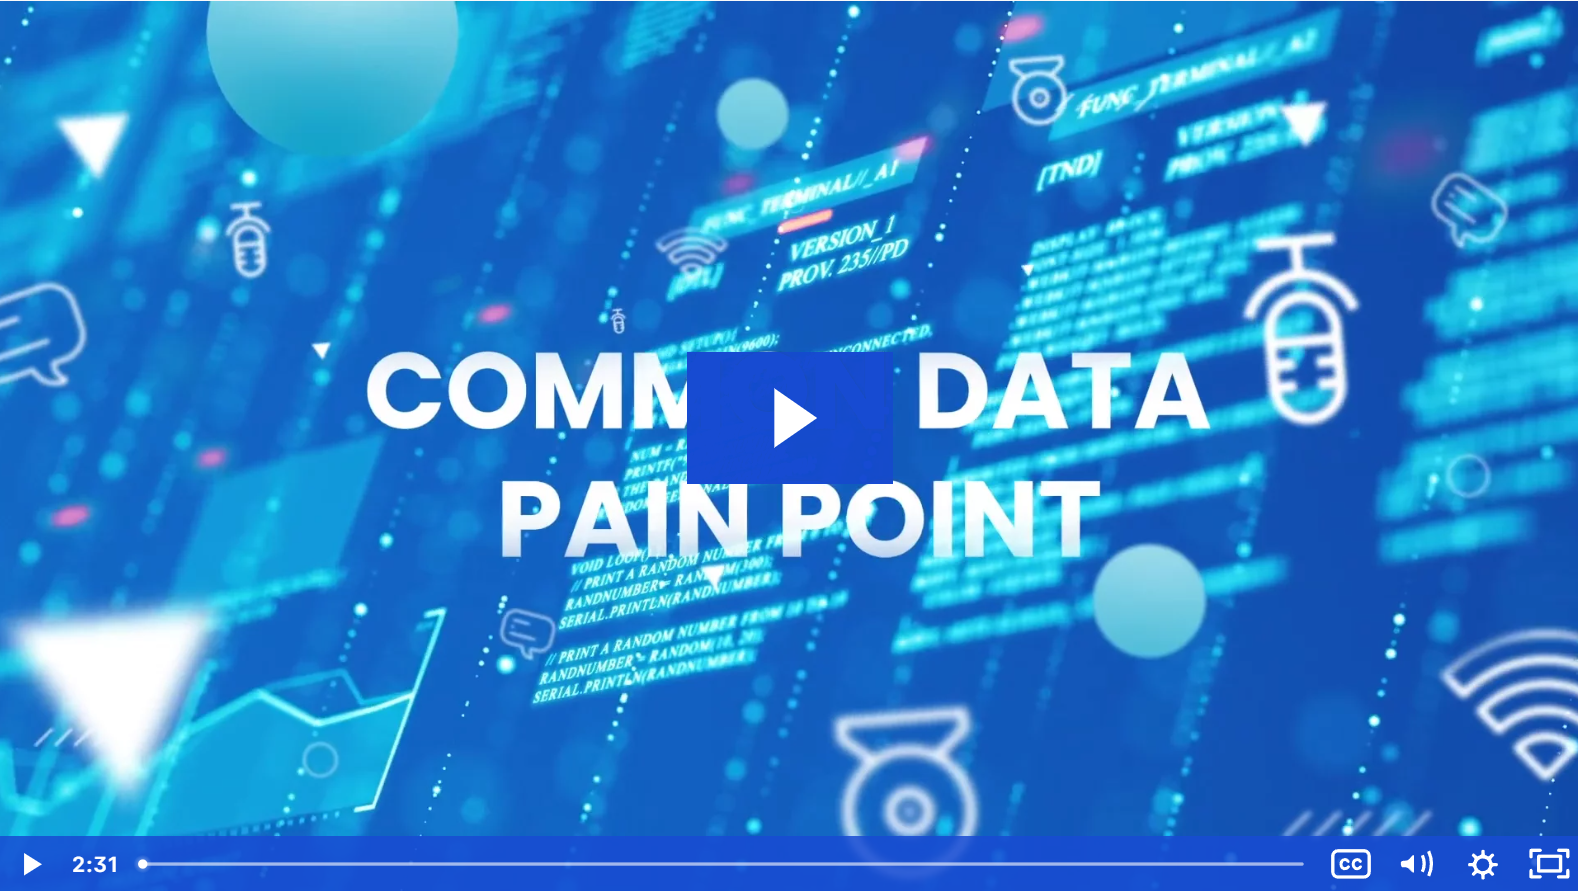 Common Data pain point